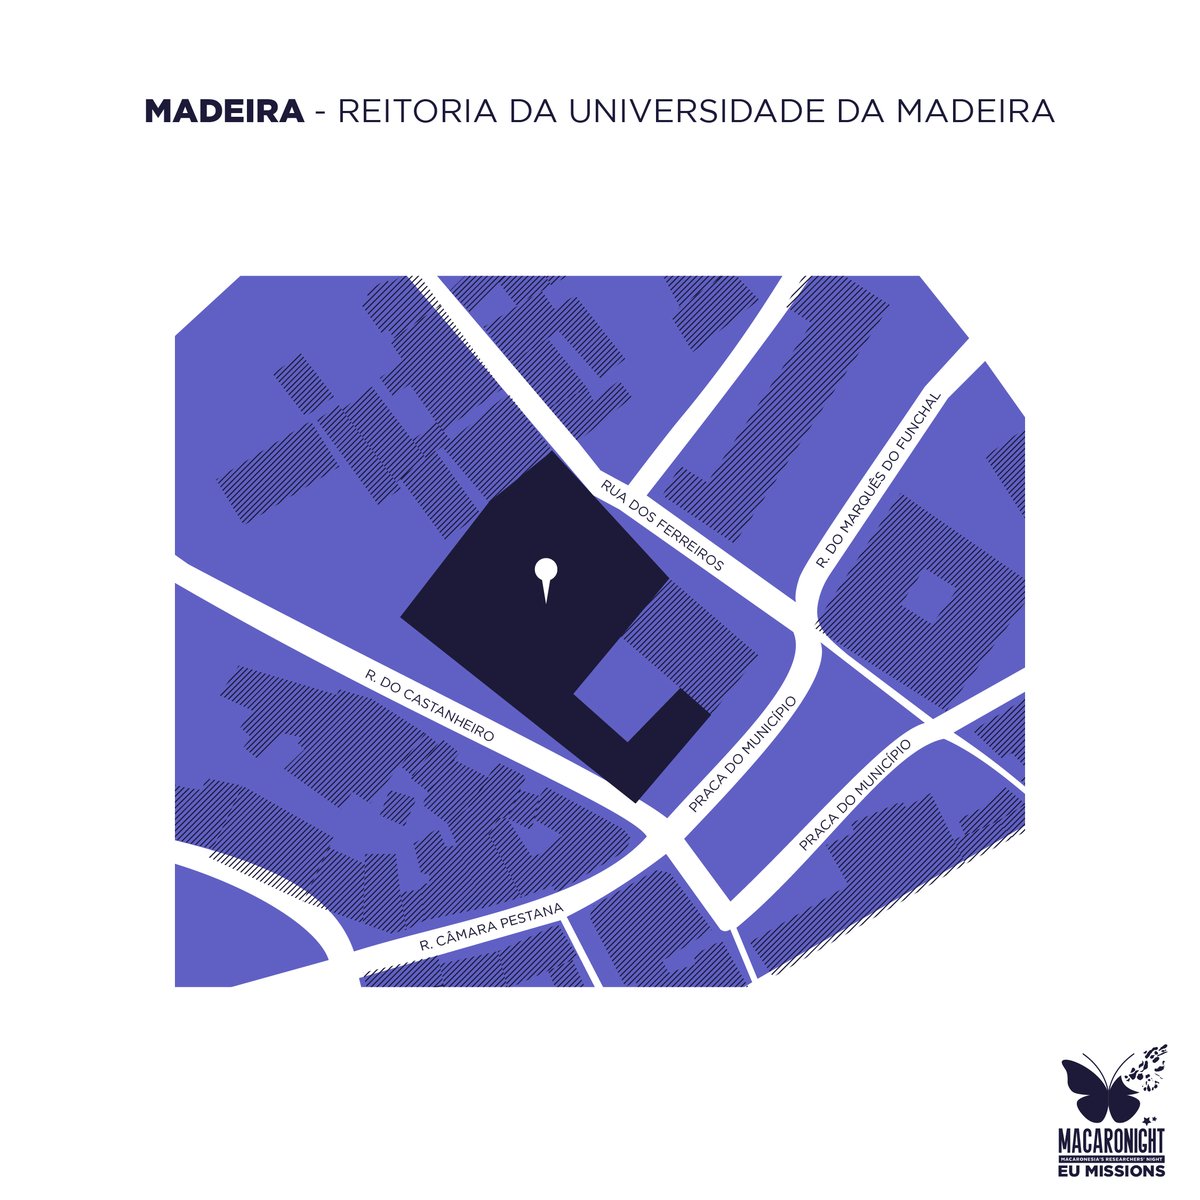 📍 Madeira, esta edição do Macaronight terá lugar na Reitoria da Universidade da Madeira, Funchal

✨🔬 Esperamos vê-lo

#MacaronightEU #ERN23 #EUMissions